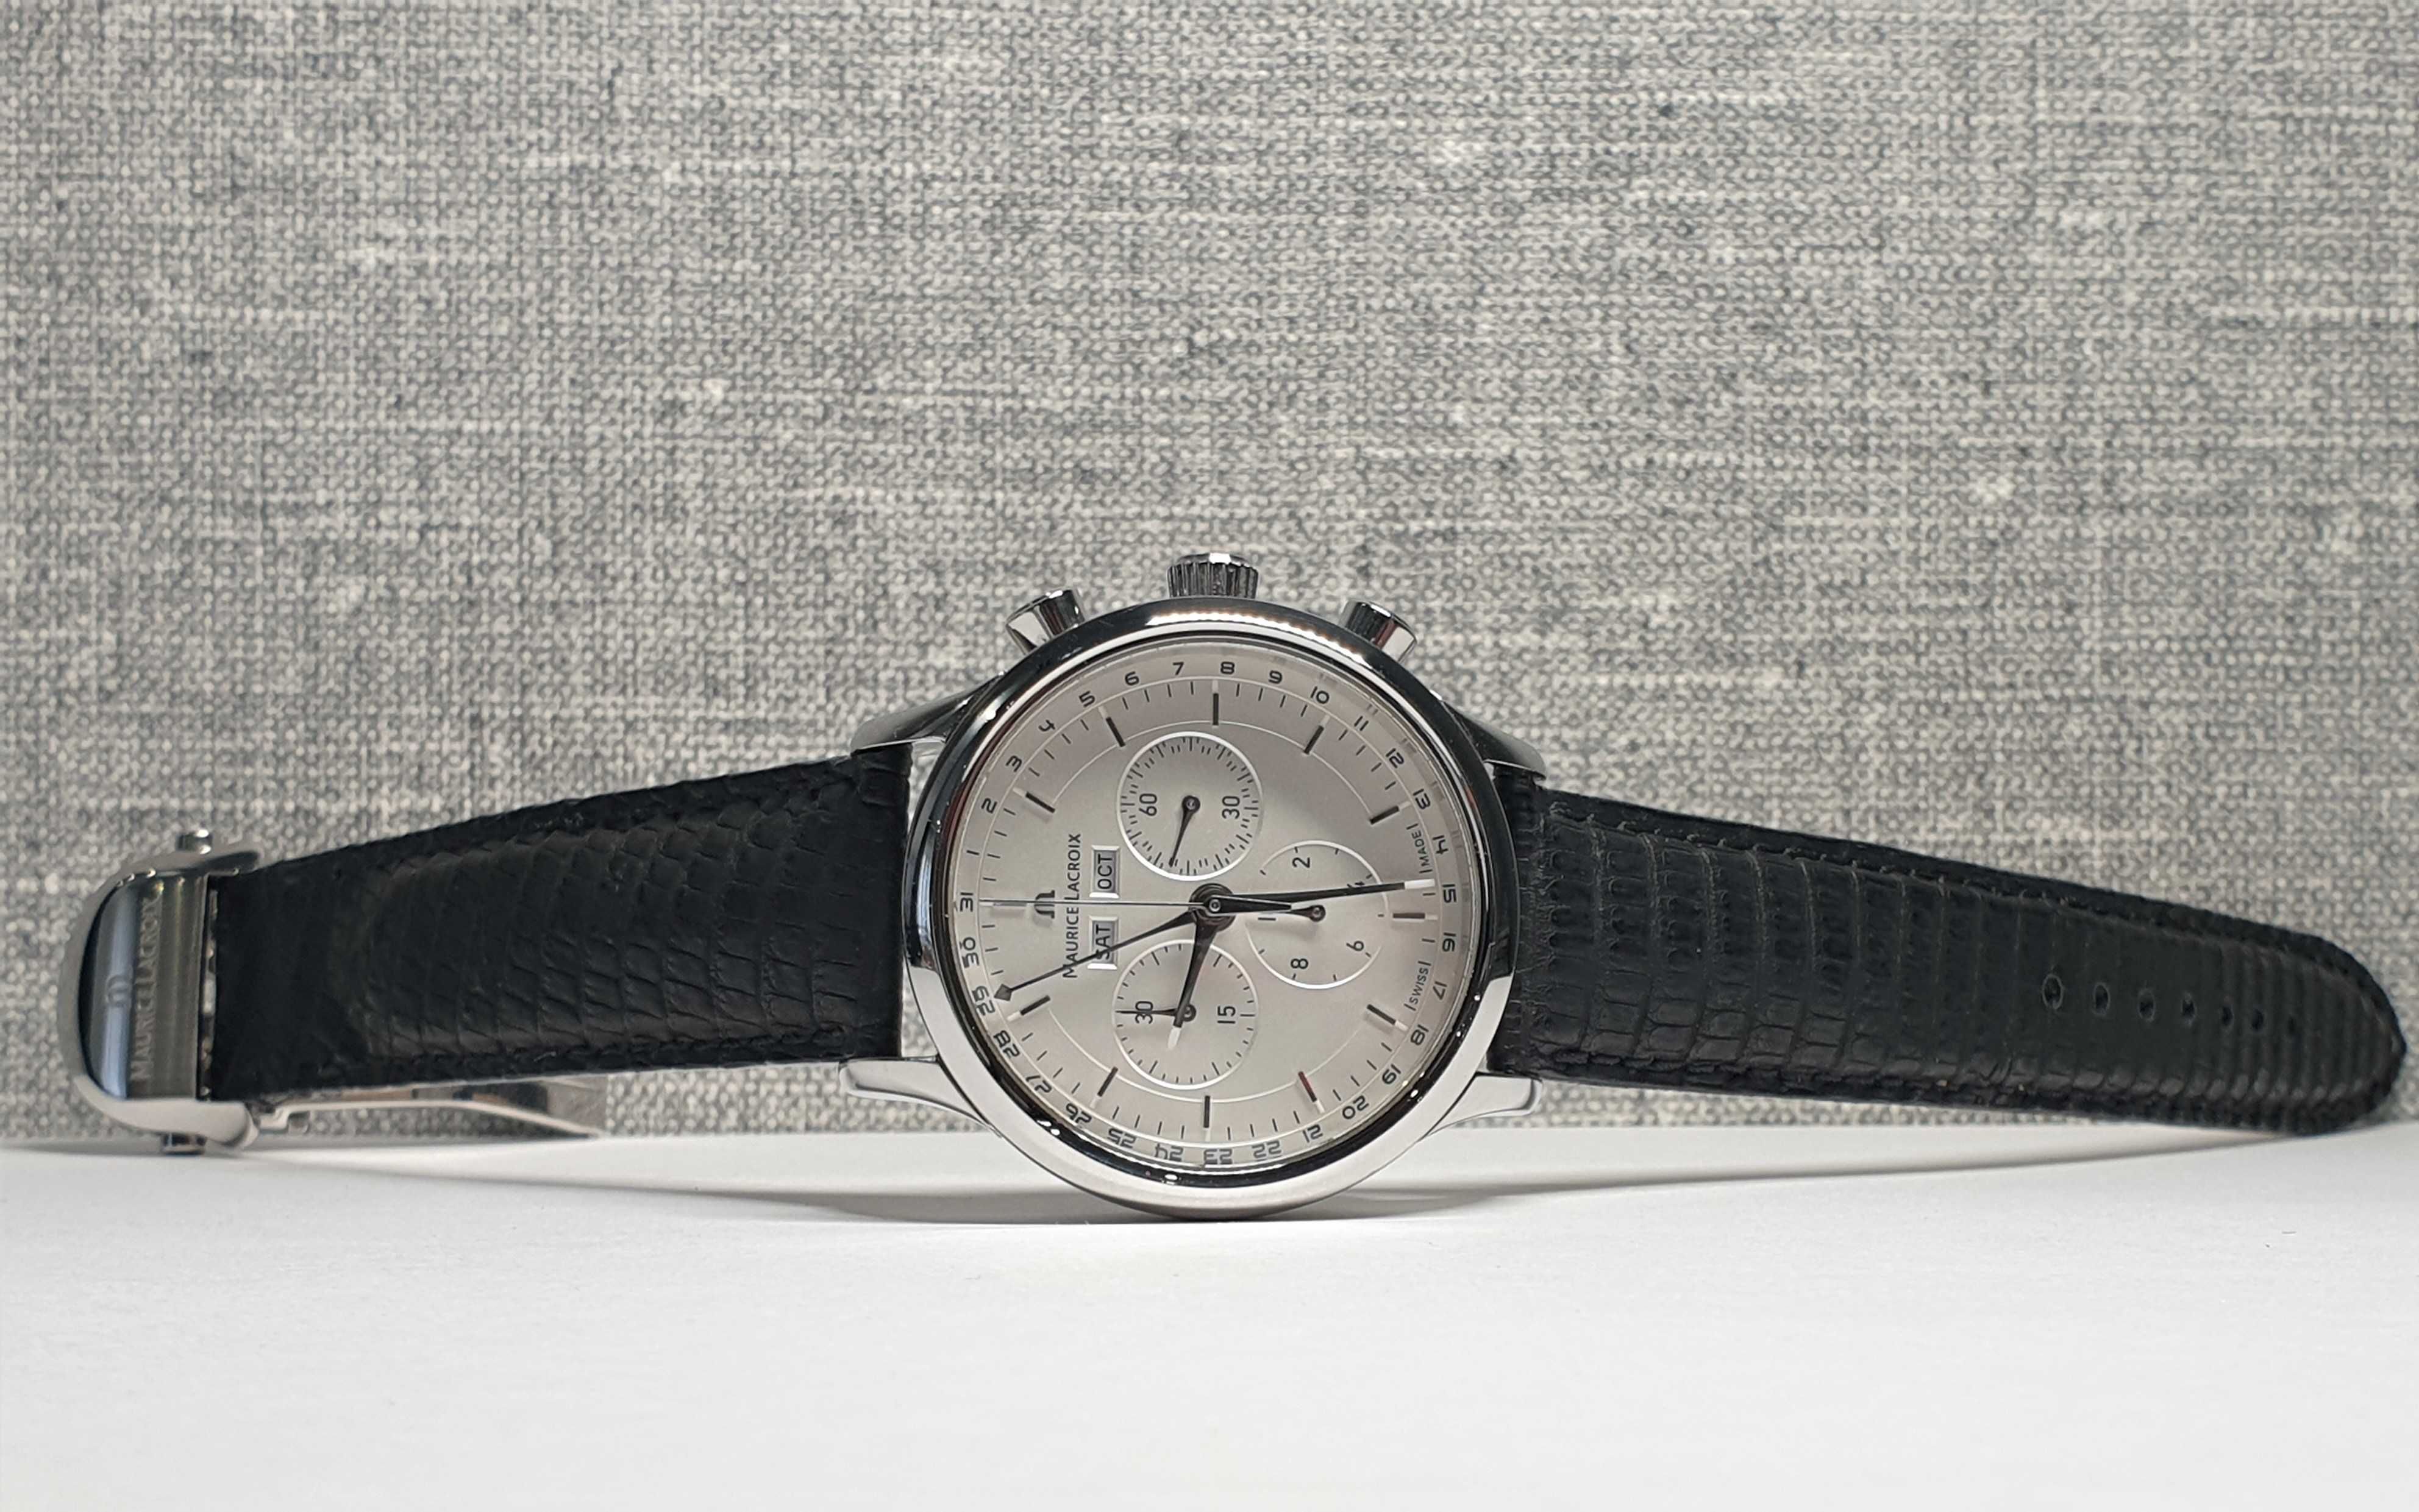 Чоловічий годинник часы Maurice Lacroix LC1008-SS001-130 Chronogr 40mm